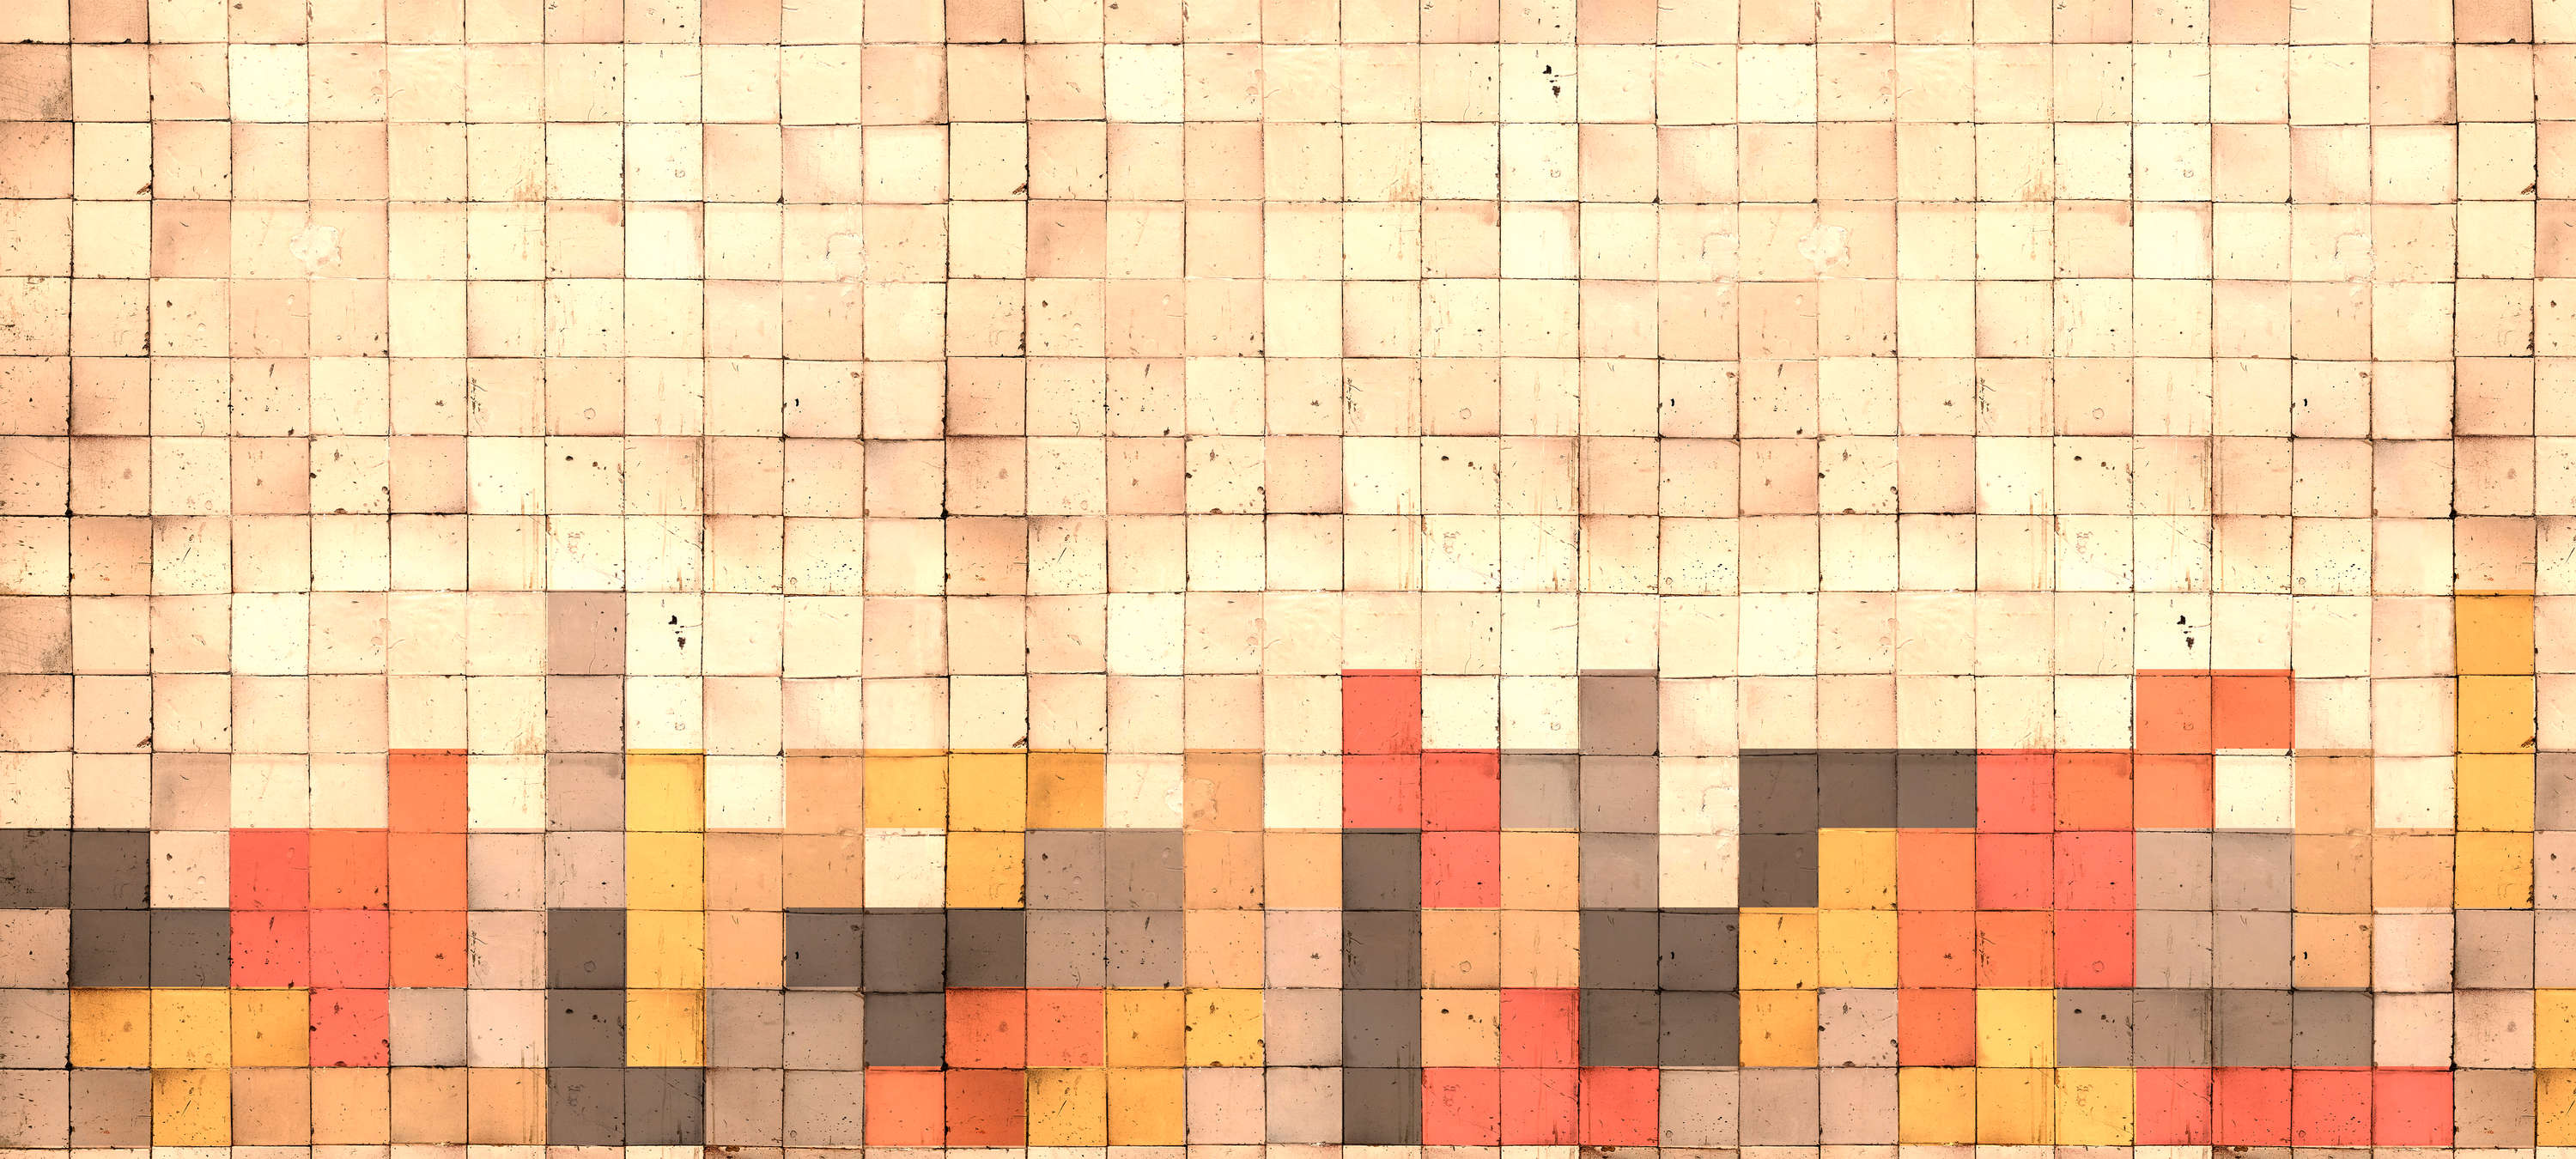             Papier peint panoramique style Tetris, 3D béton, cube mosaïque - jaune, orange, rouge
        